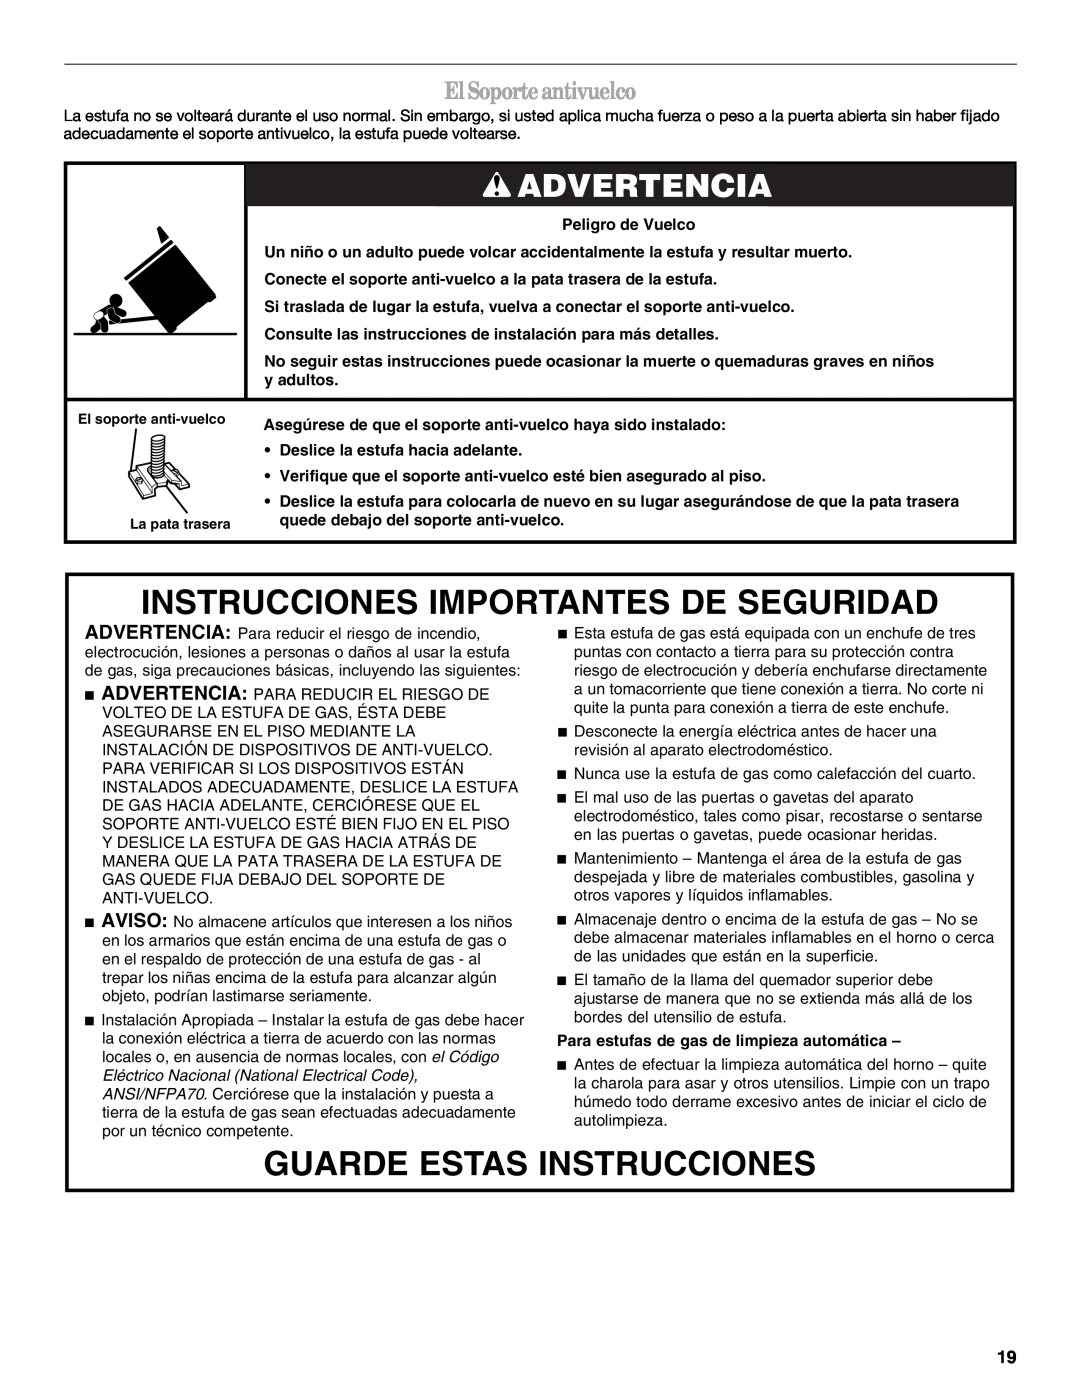 Whirlpool SF315PEPB1 Instrucciones Importantes De Seguridad, Guarde Estas Instrucciones, Advertencia, ElSoporteantivuelco 